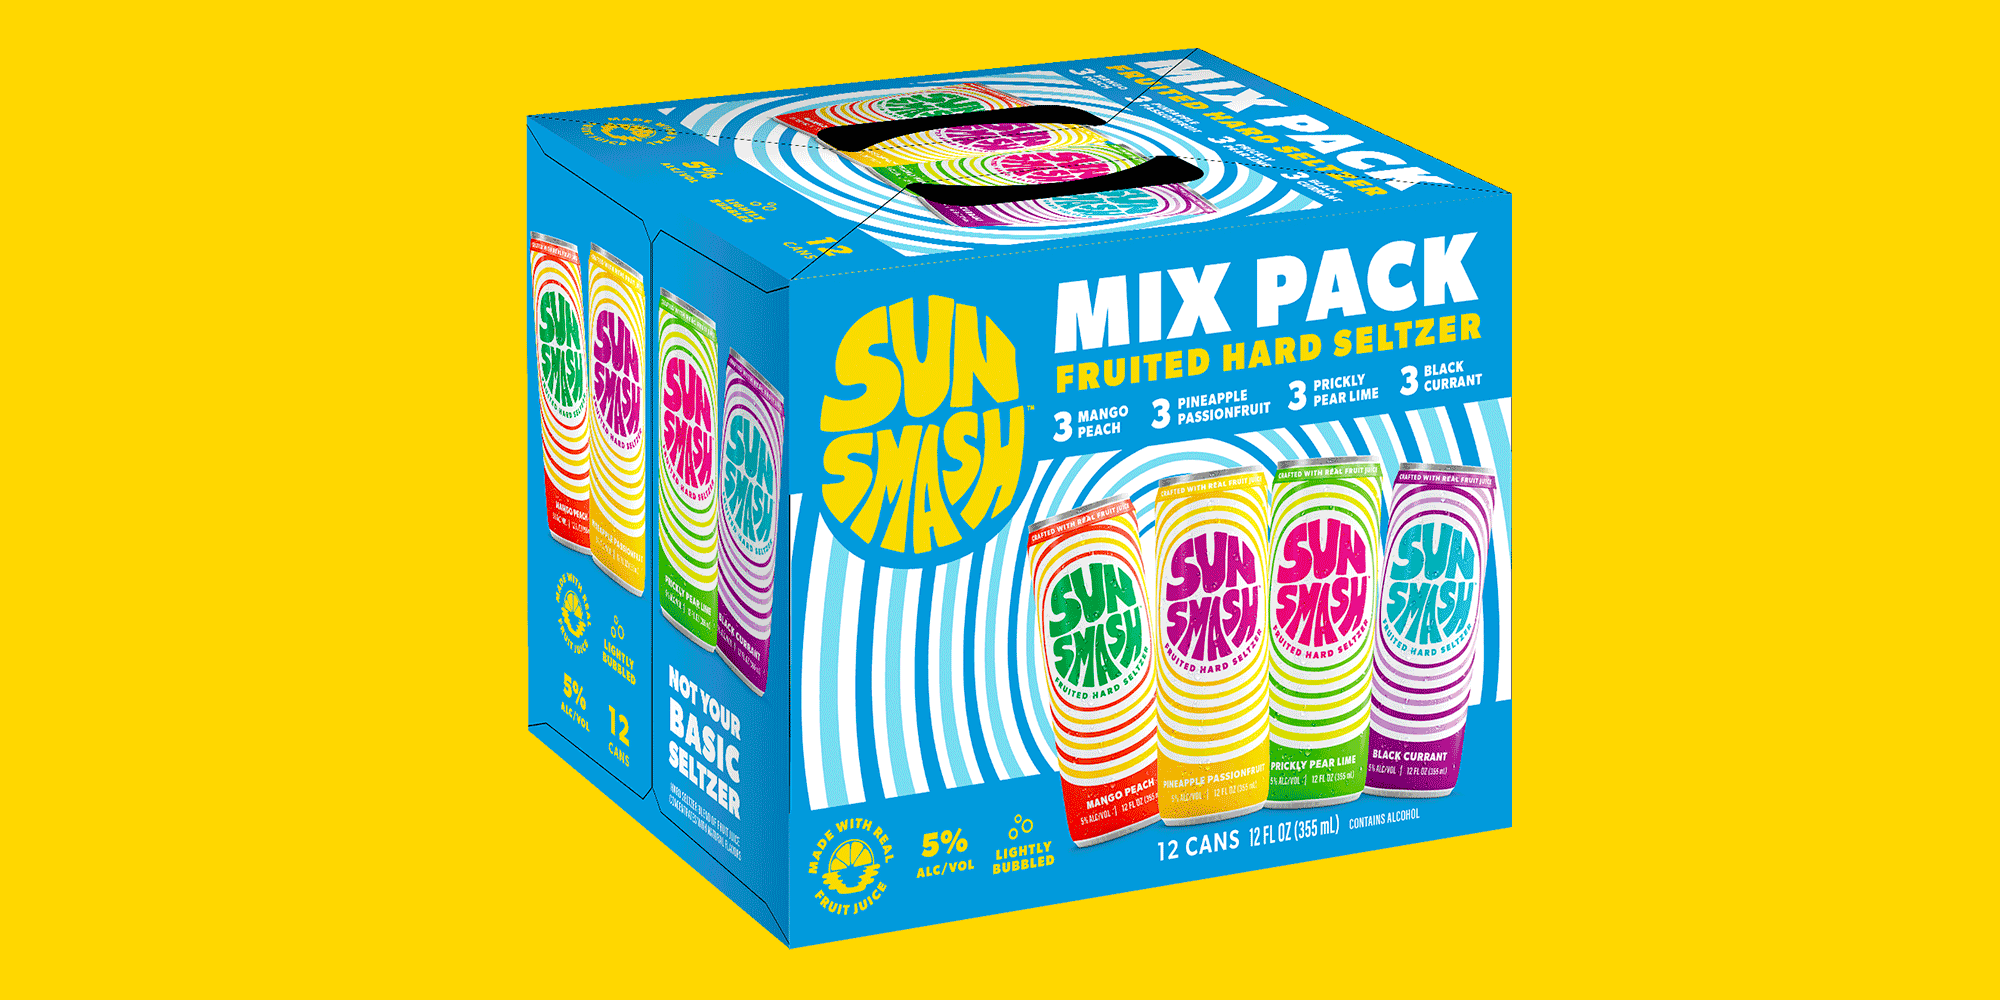 SunSmash Mix Pack Hard Seltzer